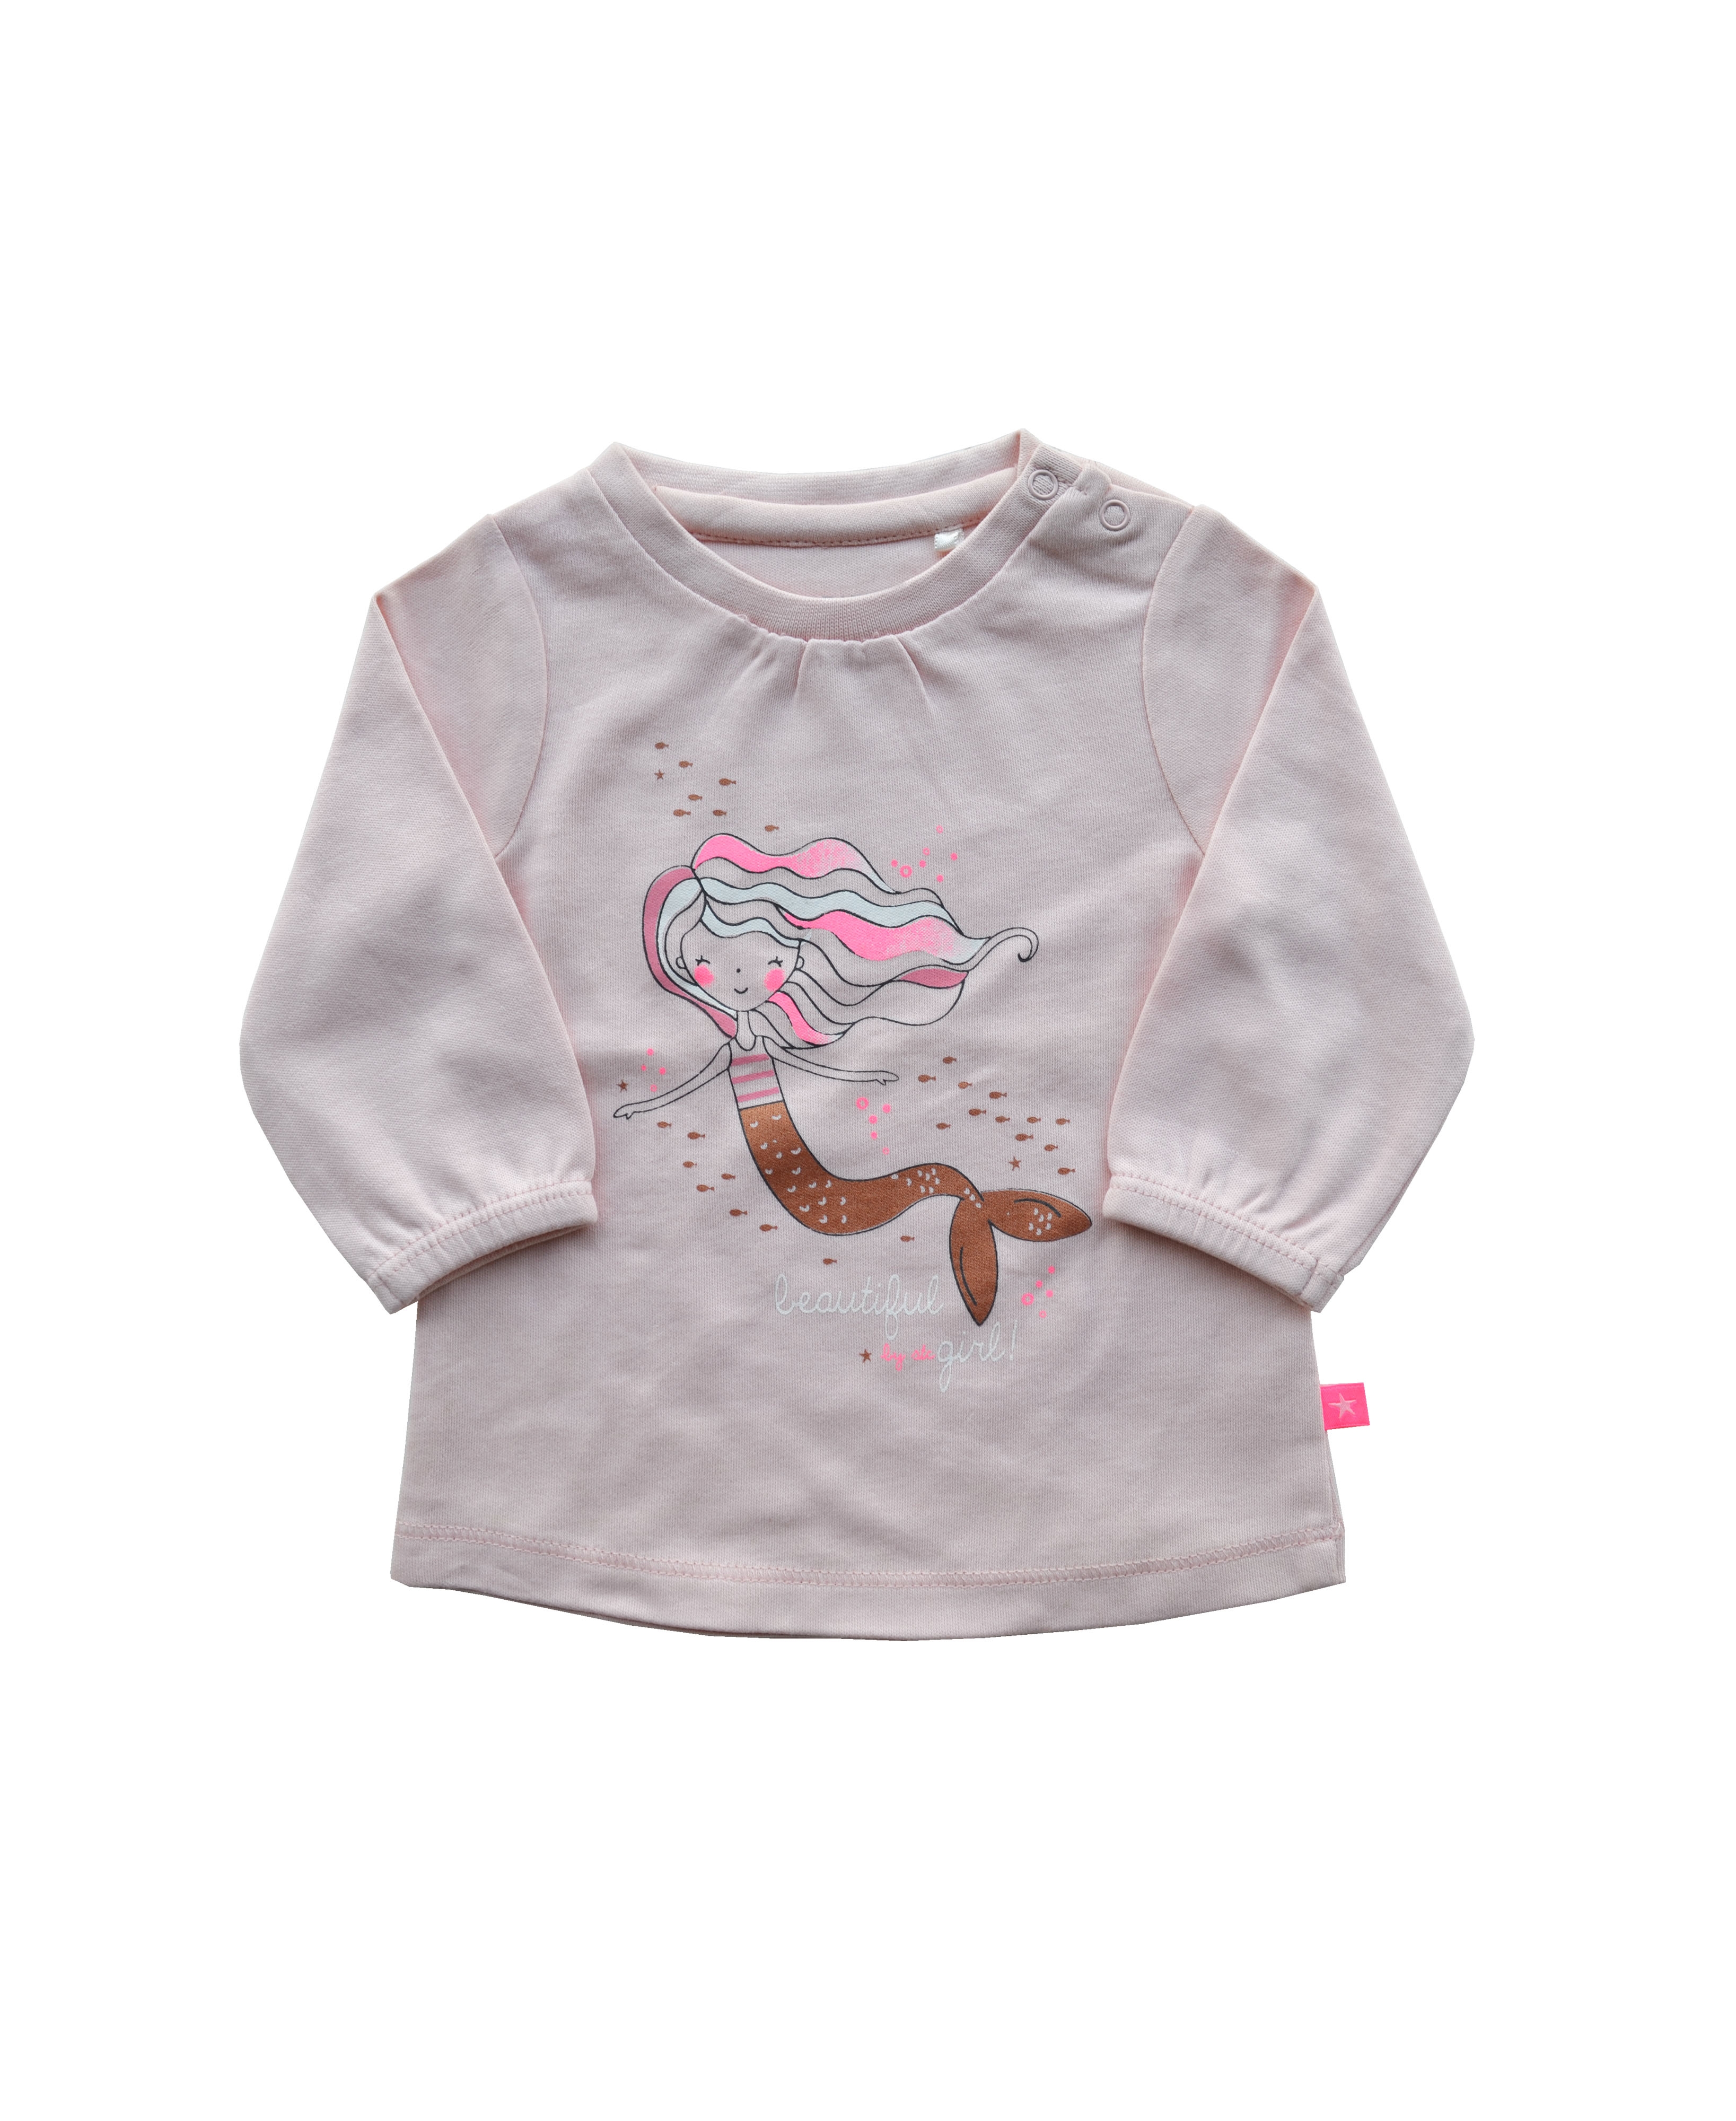 Babeez | Lt.Pink Girls T-Shirt with Mermaid print (100% Cotton Interlock Biowash) undefined